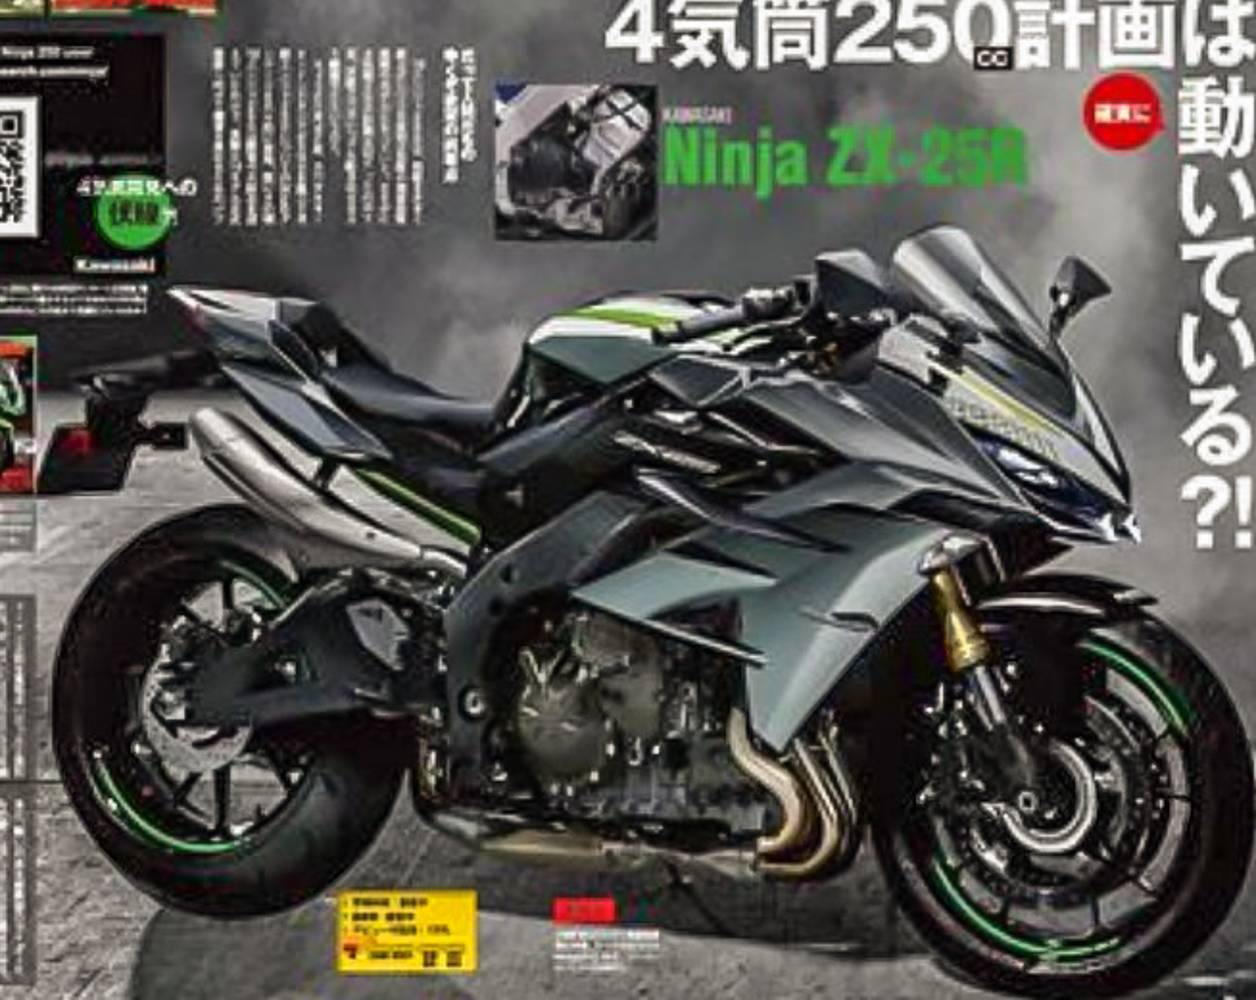 Kawasaki ninja ZX25R - Iwanbanaran.com